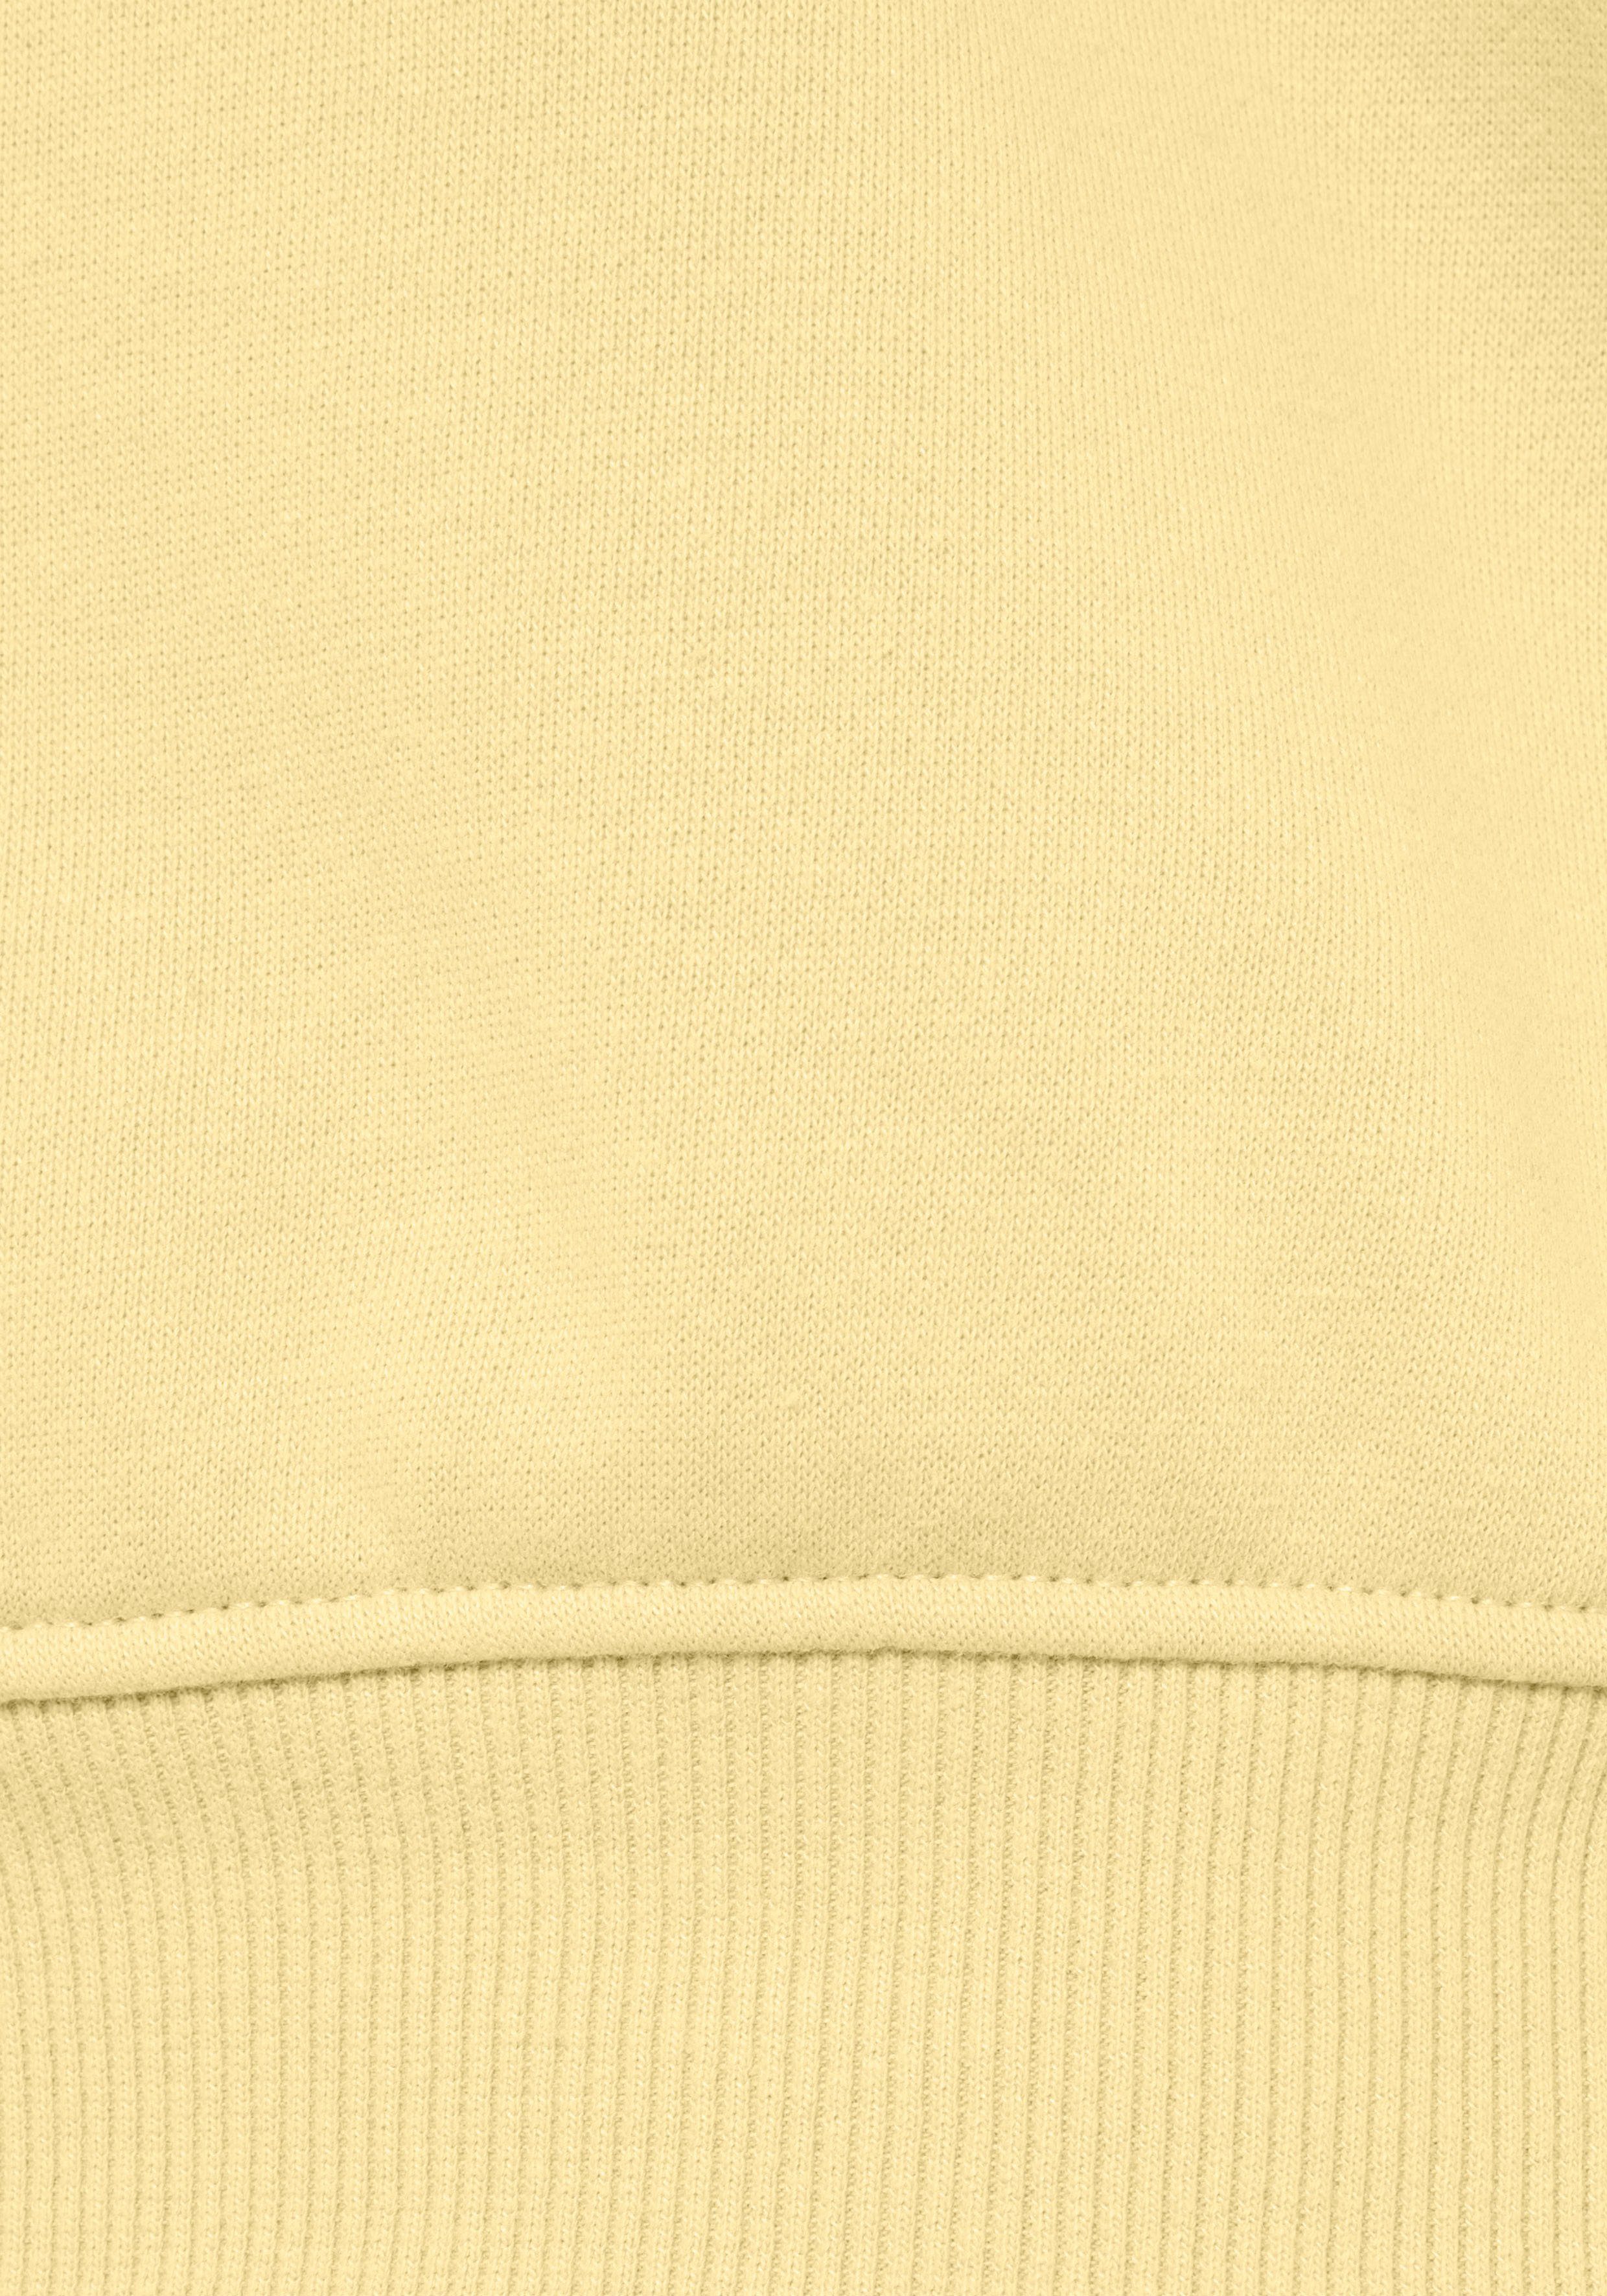 Sweatshirt Loungeanzug Buffalo Rippbündchen Sunshine und mit Druck, gelb